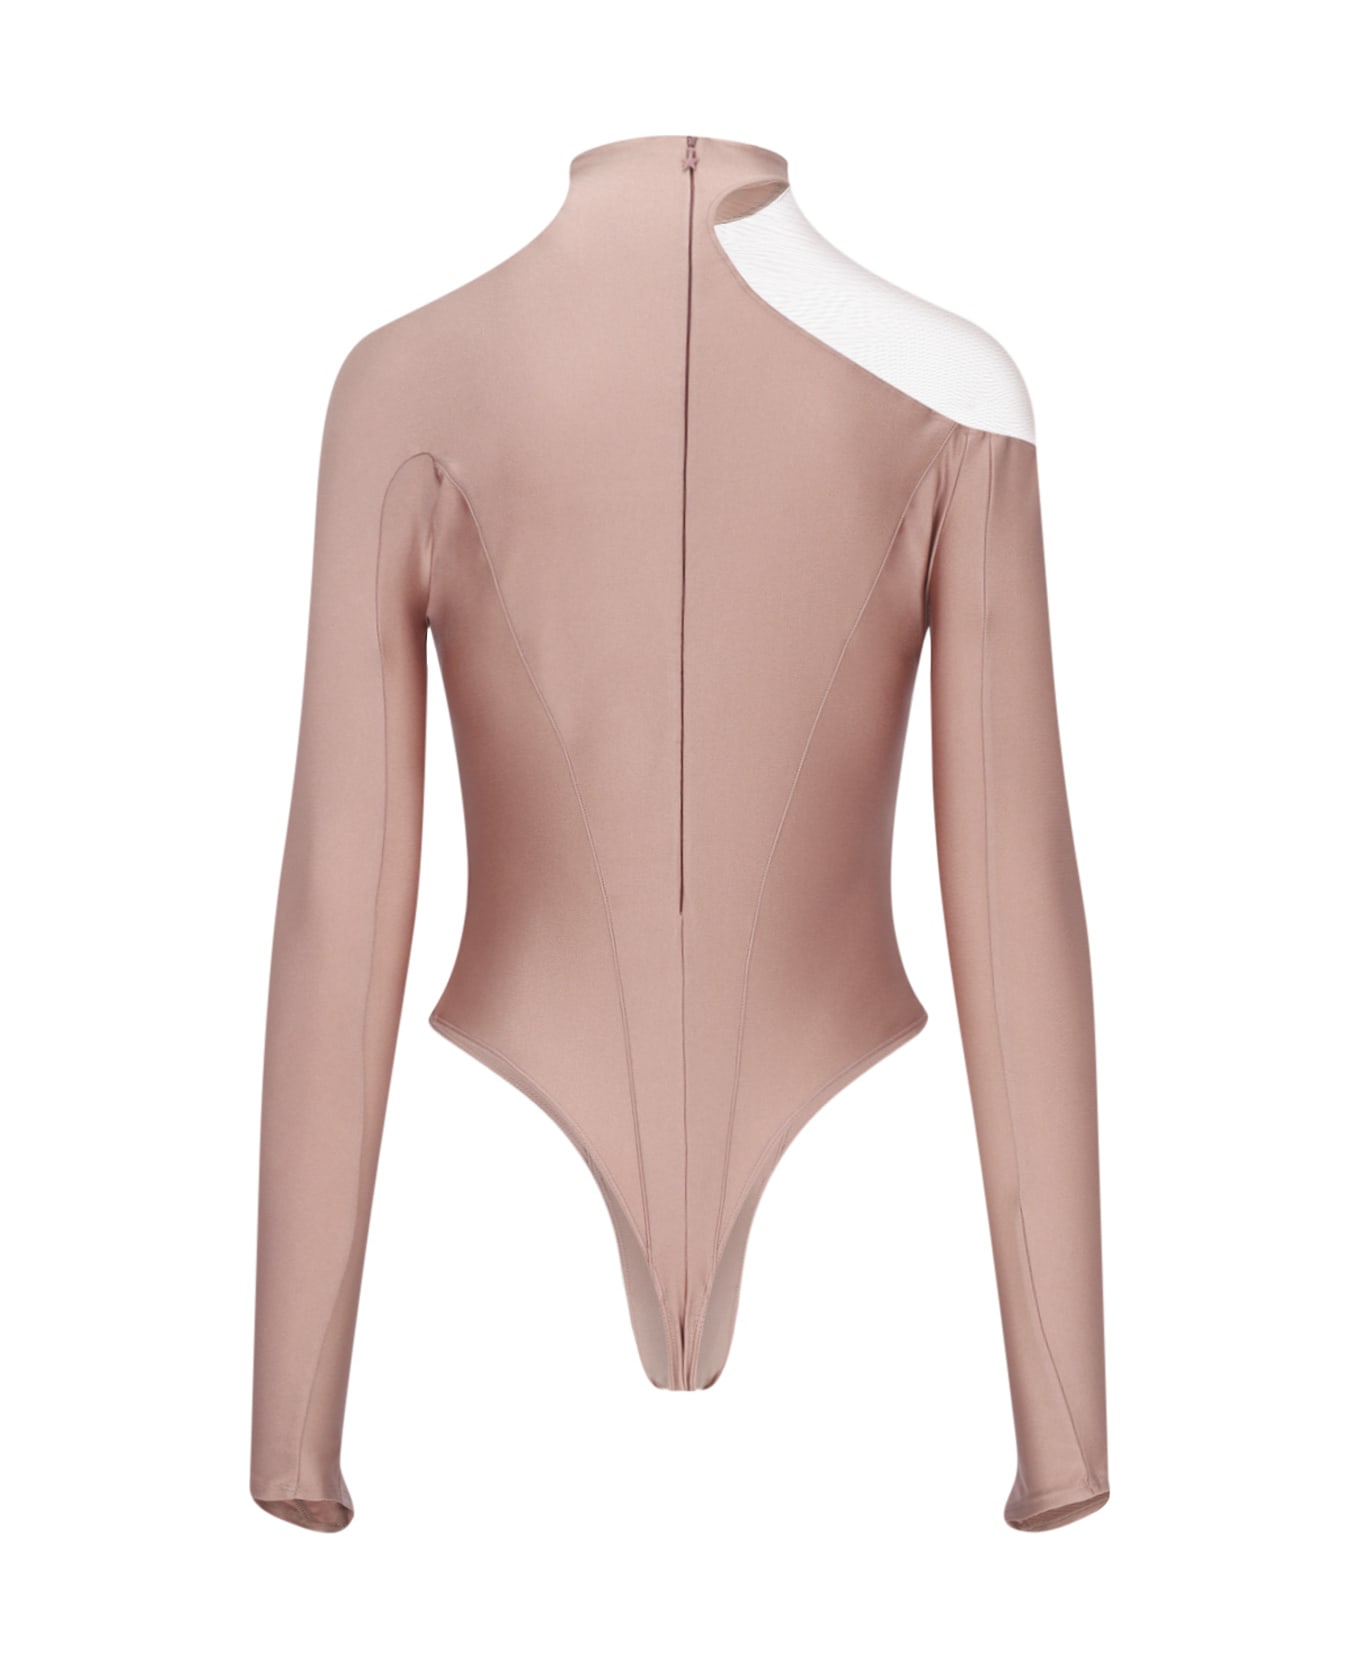 Mugler 'asymmetric Illusion' Bodysuit - Pink ボディスーツ